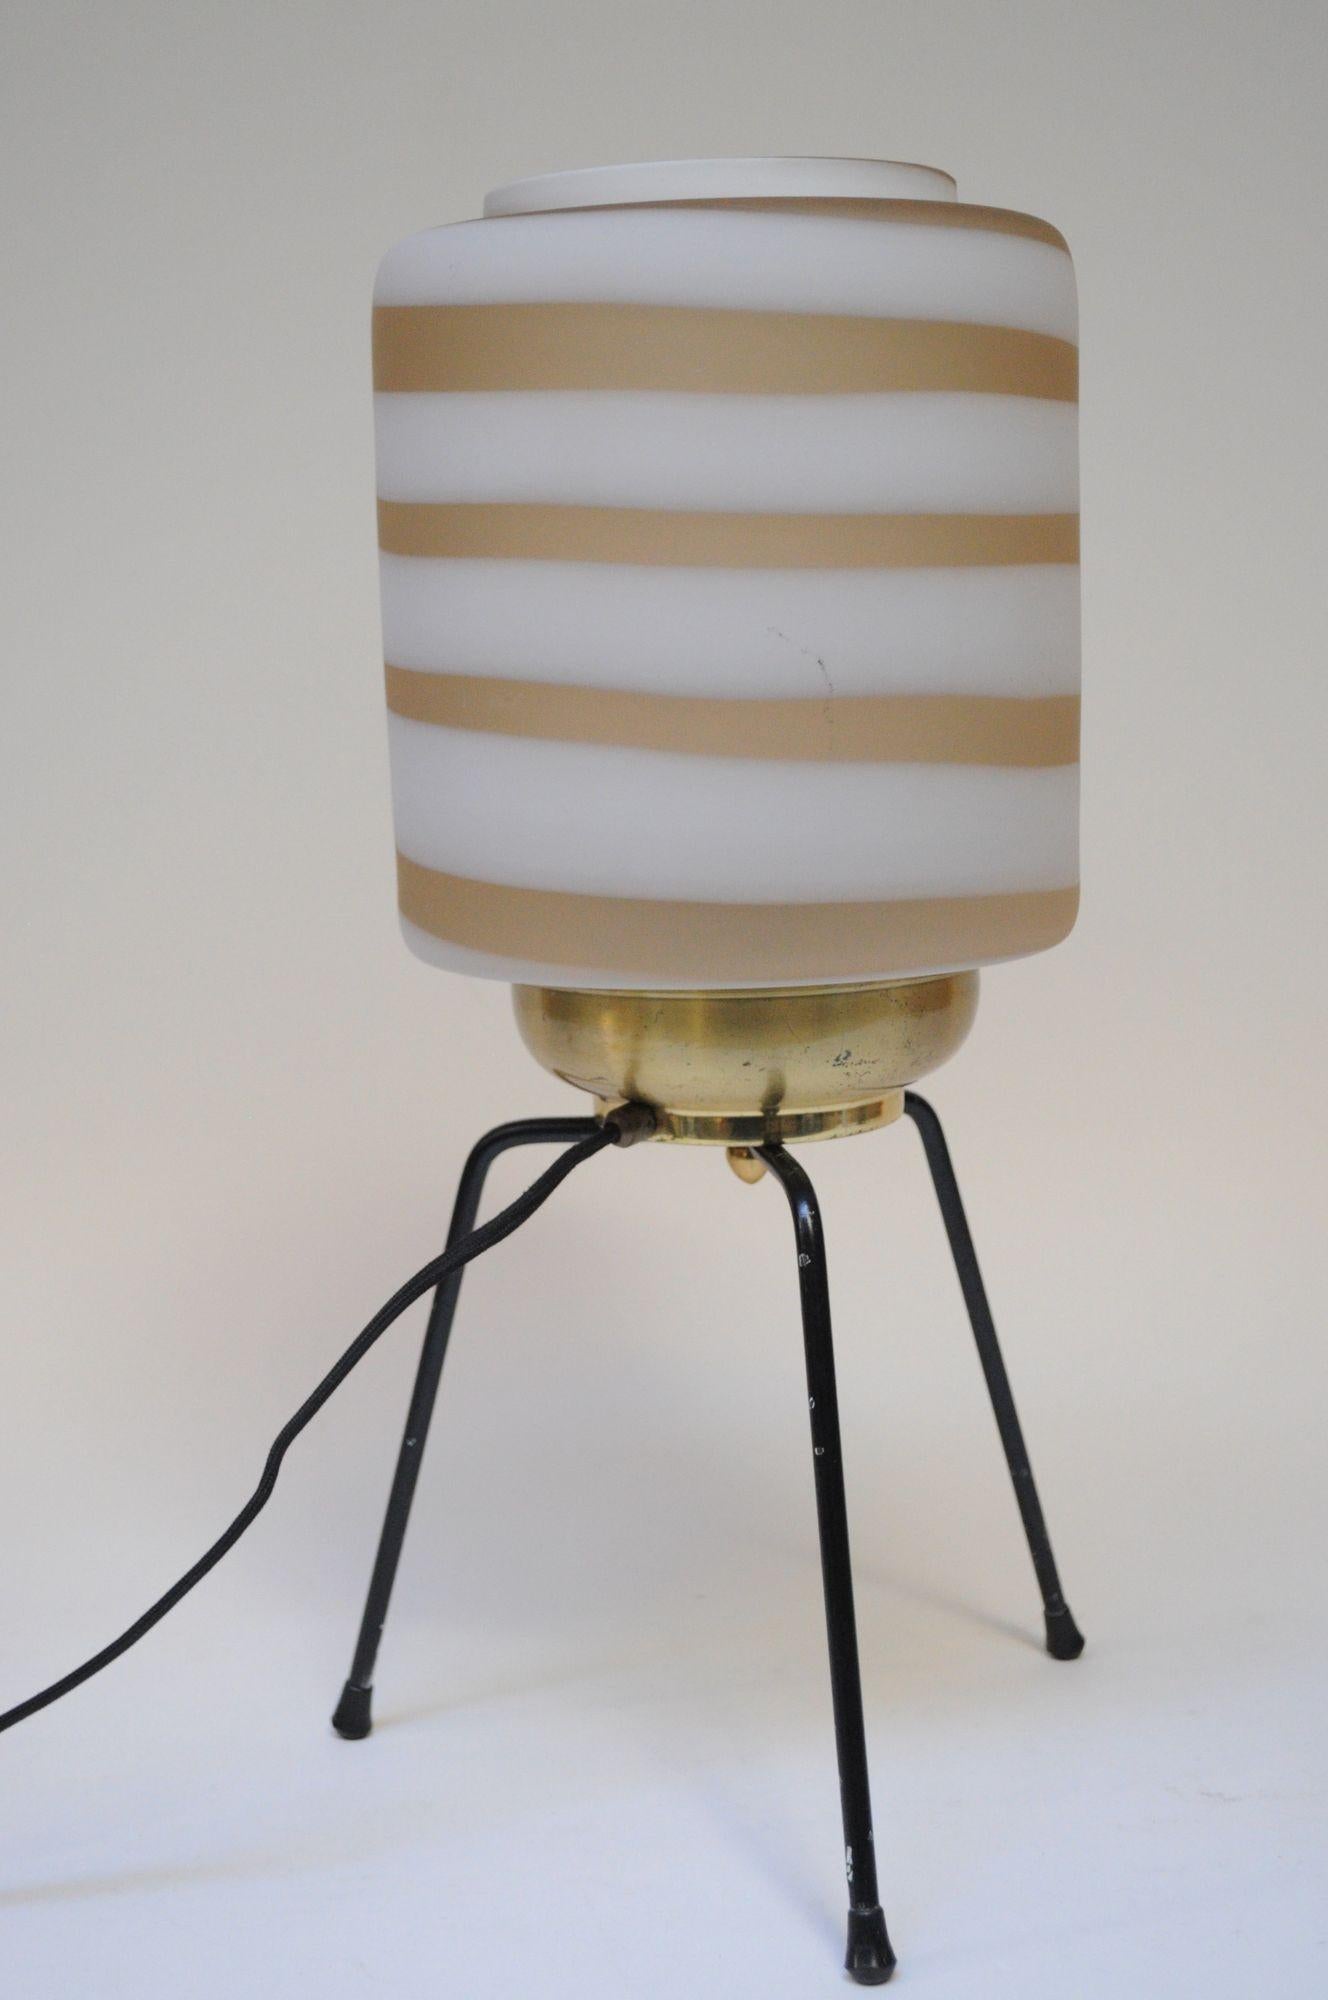 Impressionnante lampe de table composée d'une base tripode en caoutchouc/plastique supportant un berceau en laiton avec un abat-jour en verre de Murano (vers les années 1950, Italie).
L'abat-jour cylindrique en verre dépoli est un tourbillon de